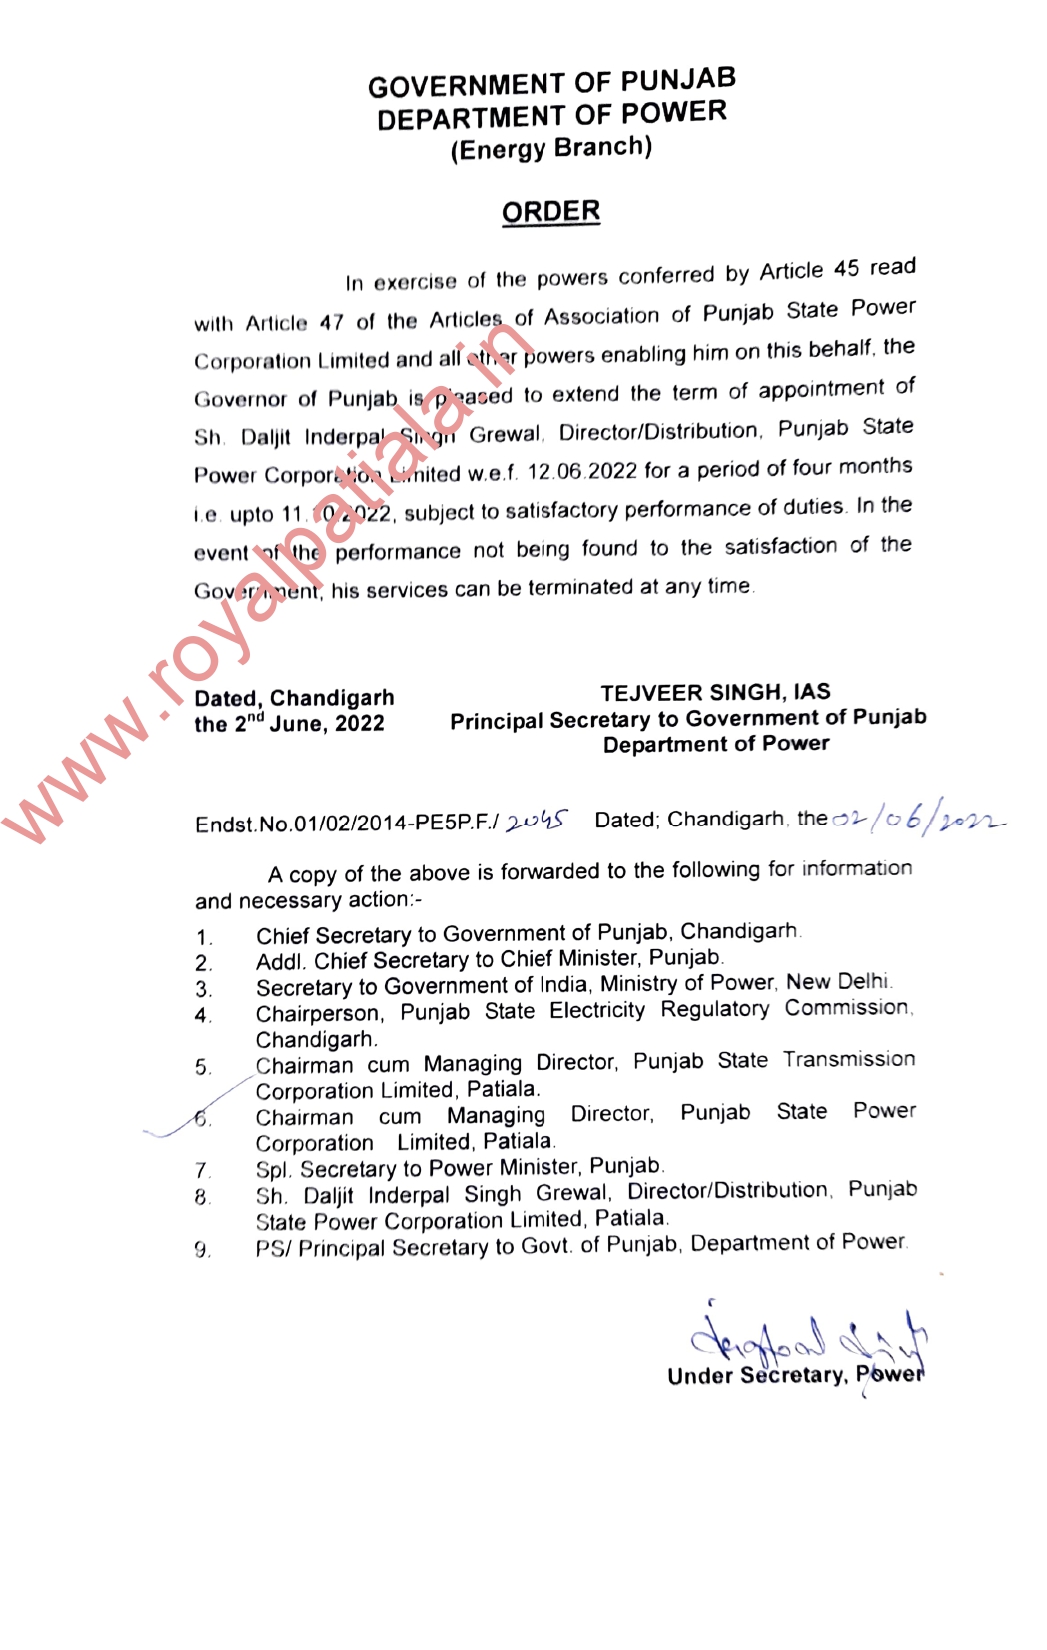 PSPCL, PSTCL directors term extended by Punjab govt